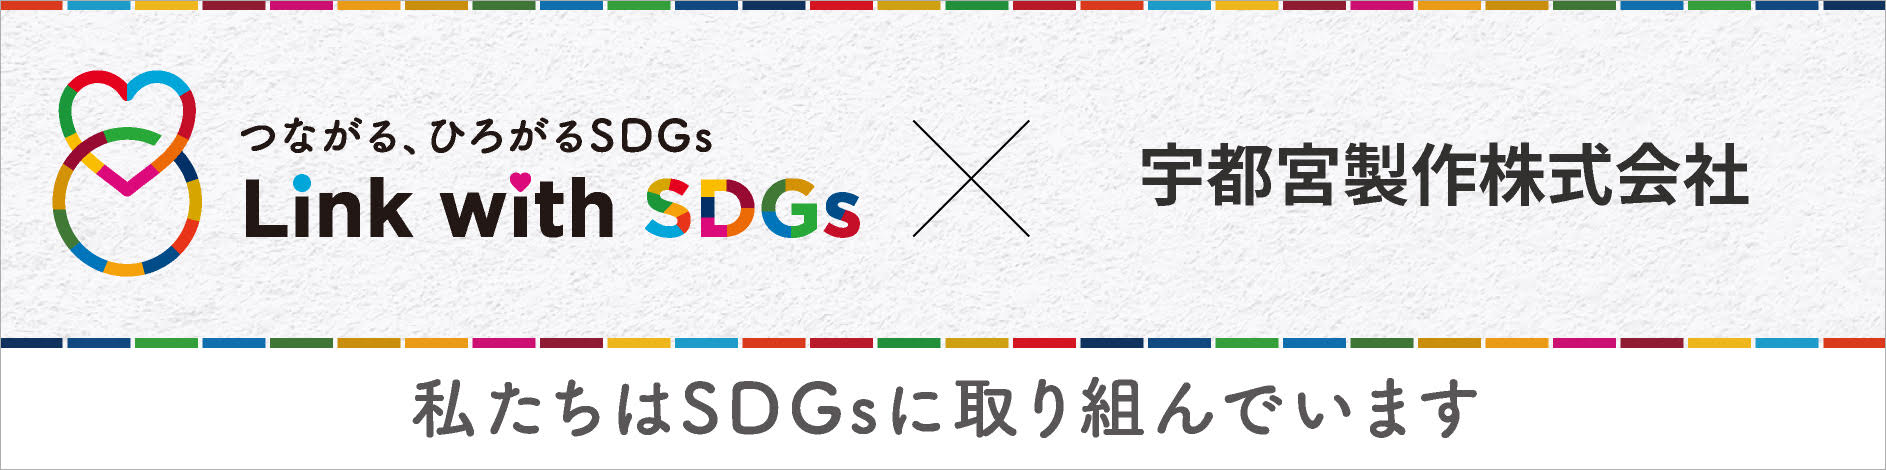 つながる、ひろがるSDGs × 宇都宮製作株式会社 私たちはSDGsに取り組んでいます